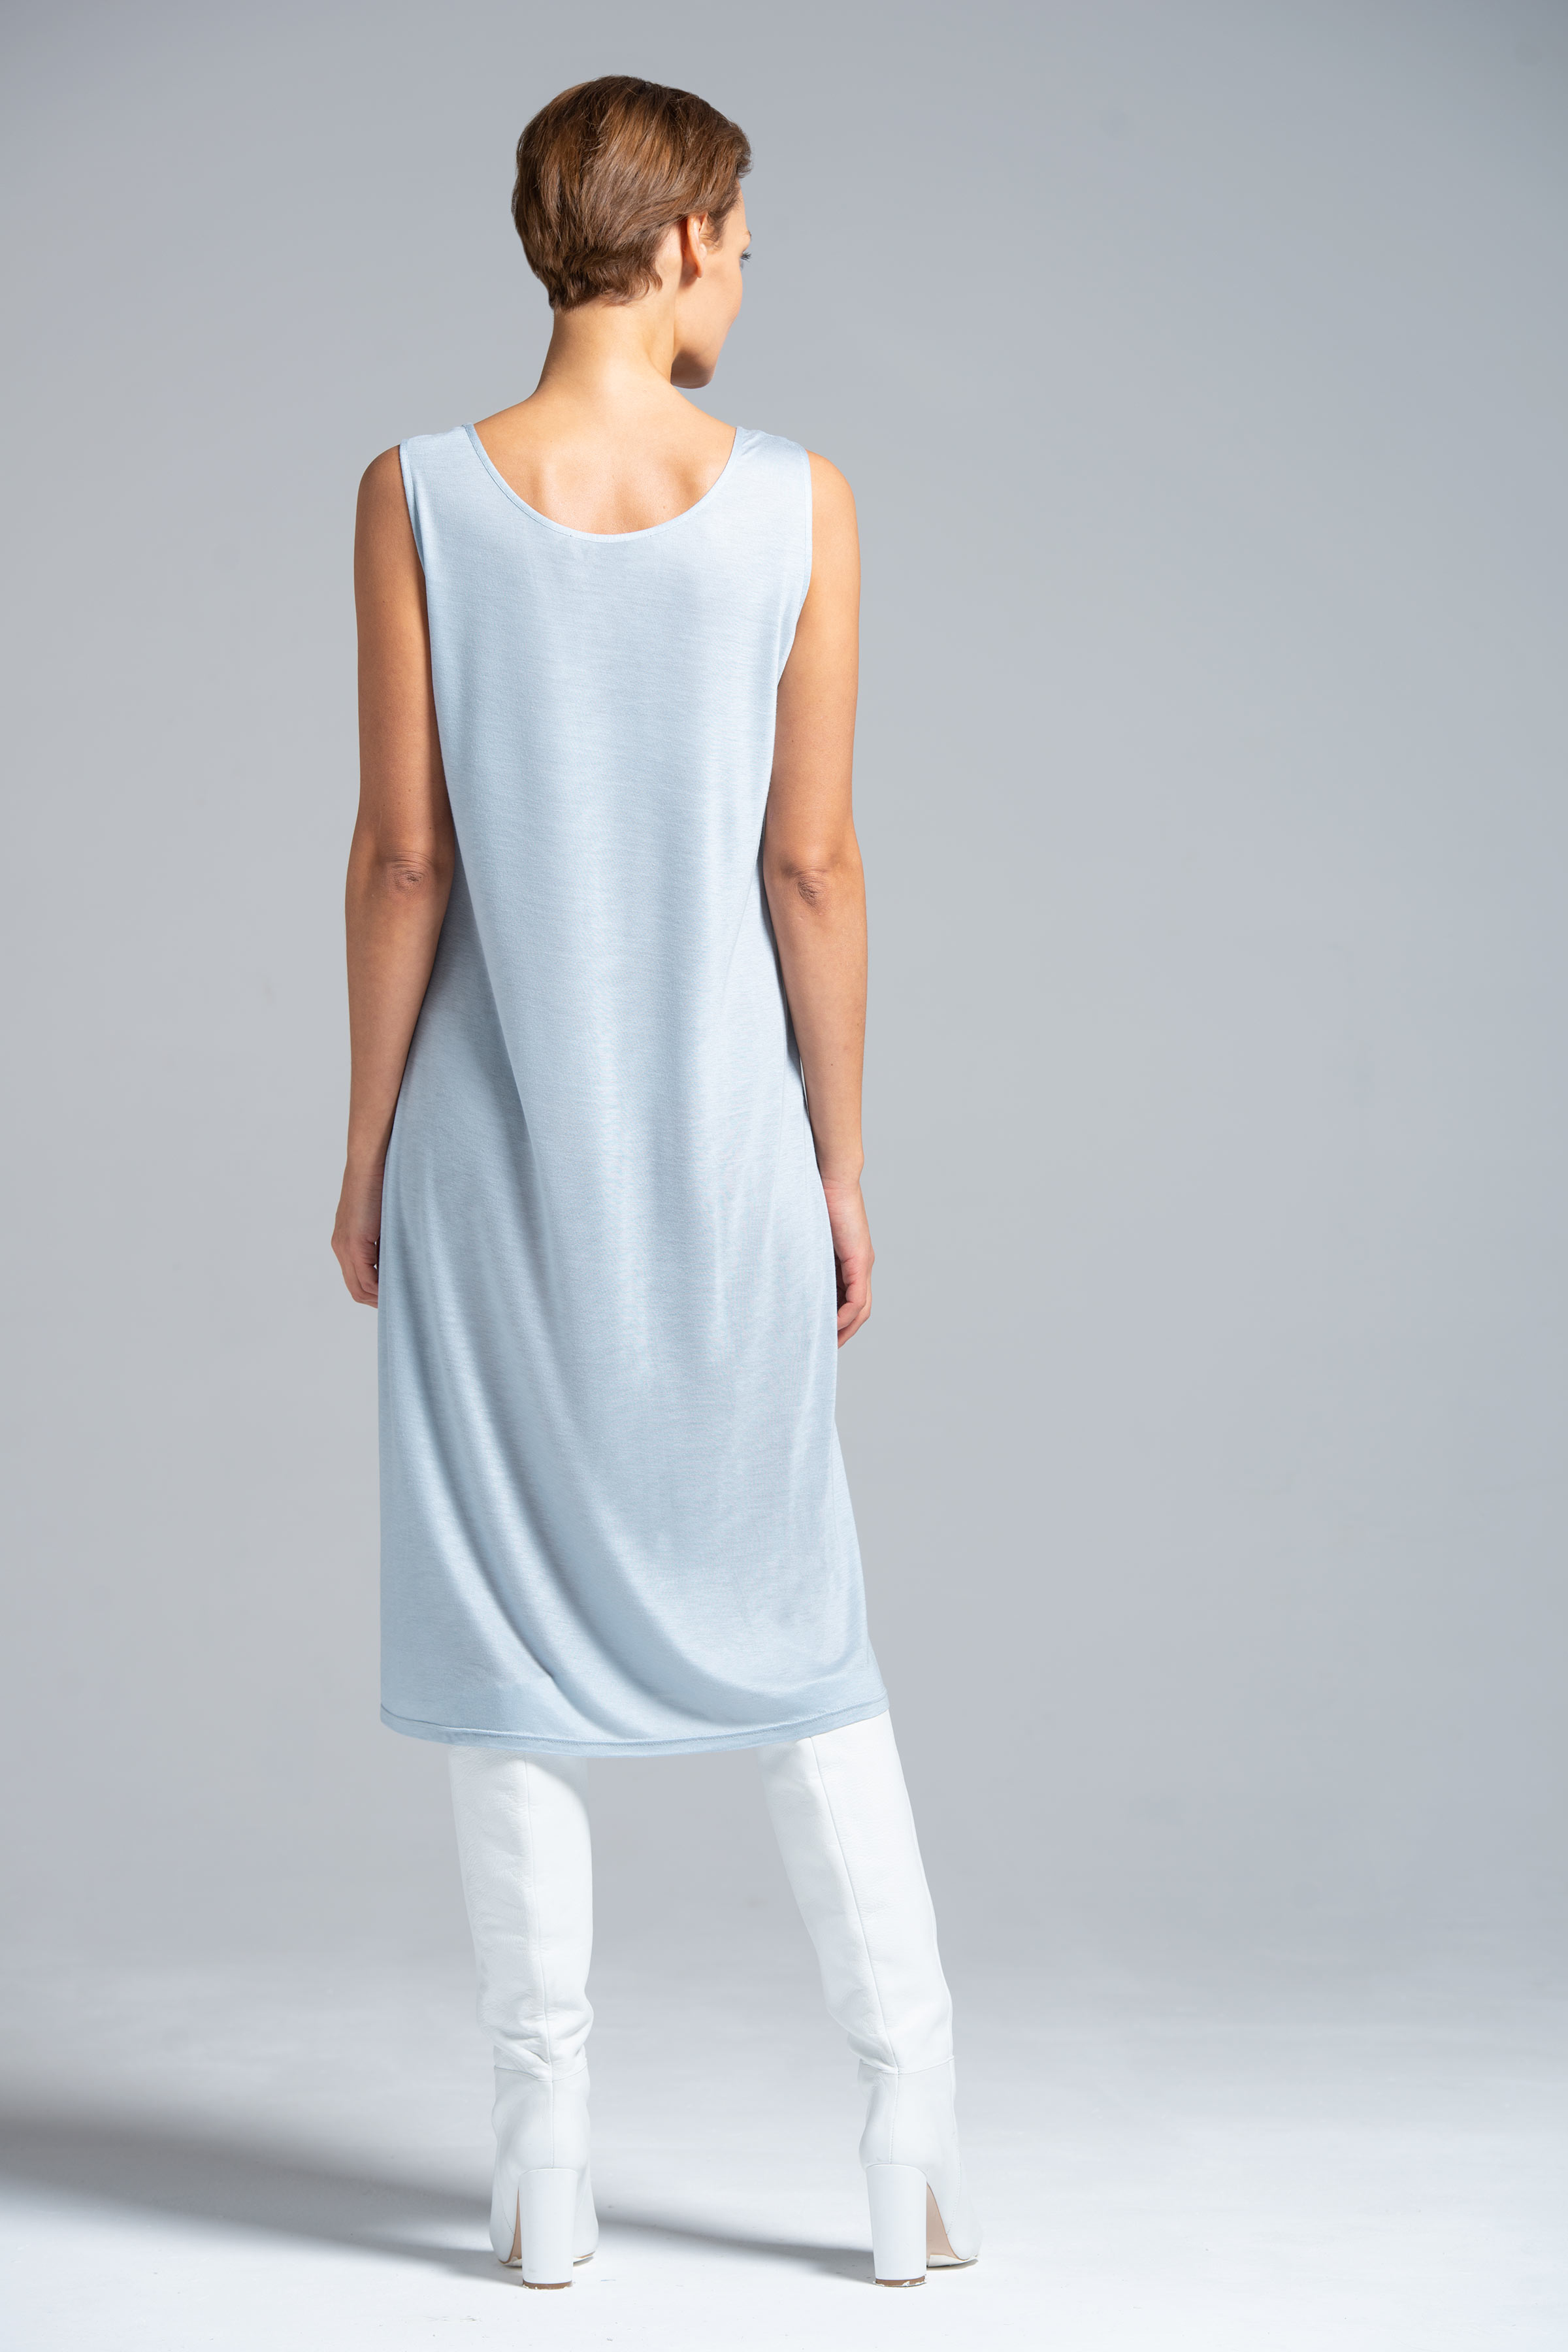 Платье база прямое среднее, без рукавов 39 Светло- джинсовый (denim bleu clair)  от Lesel (Лесель)! Заказывайте по ✆ 8 (800) 777 02 37